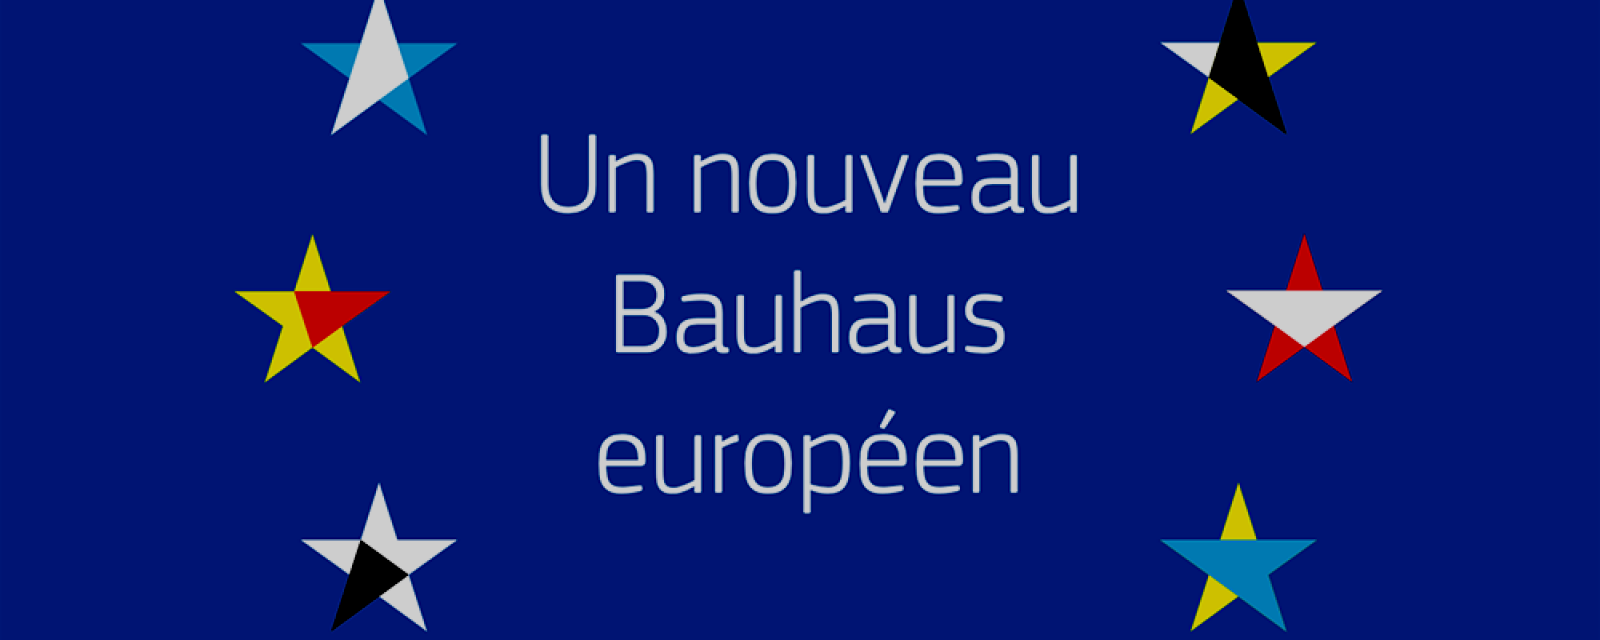 Conférence sur le « Nouveau Bauhaus européen »